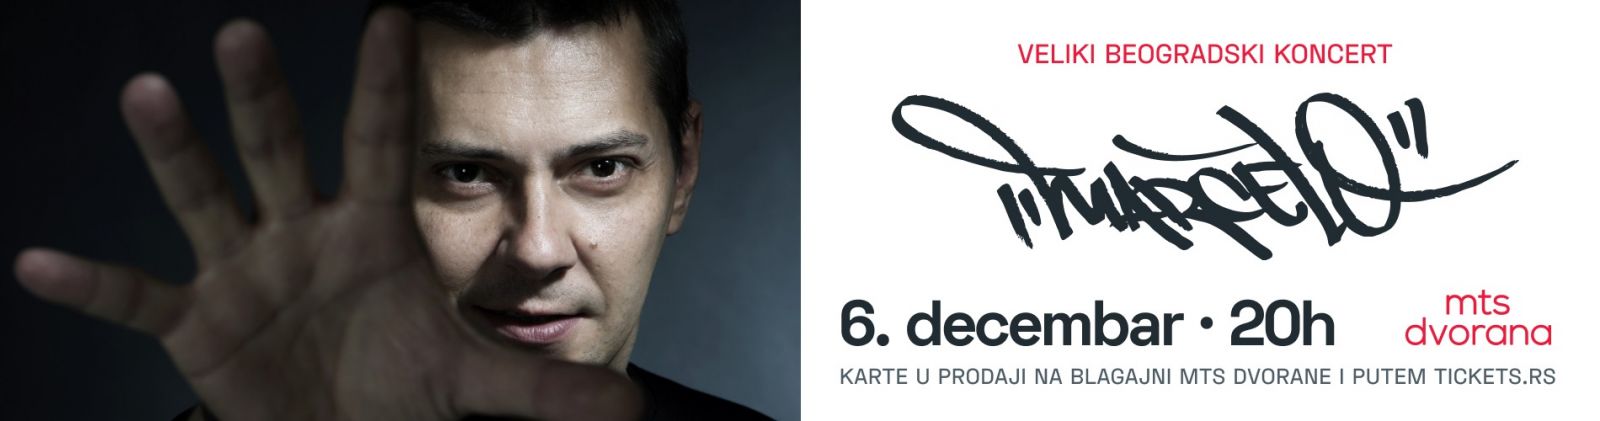 Beogradski koncert Marčela održaće se u MTS dvorani 6. decembra